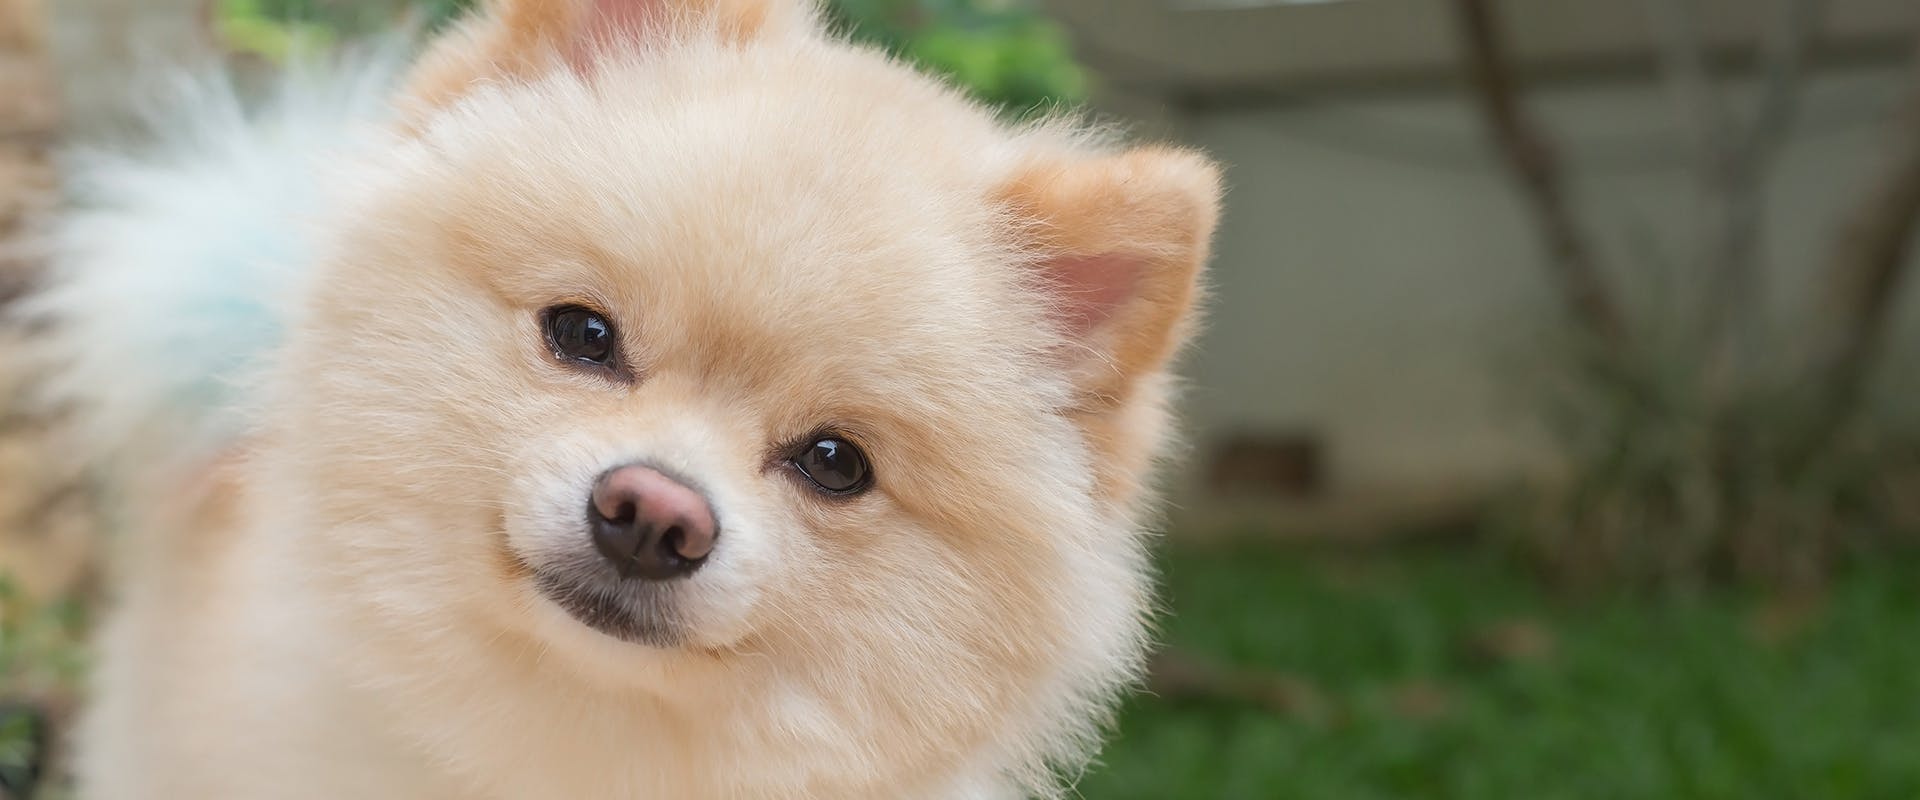 A Pomeranian dog